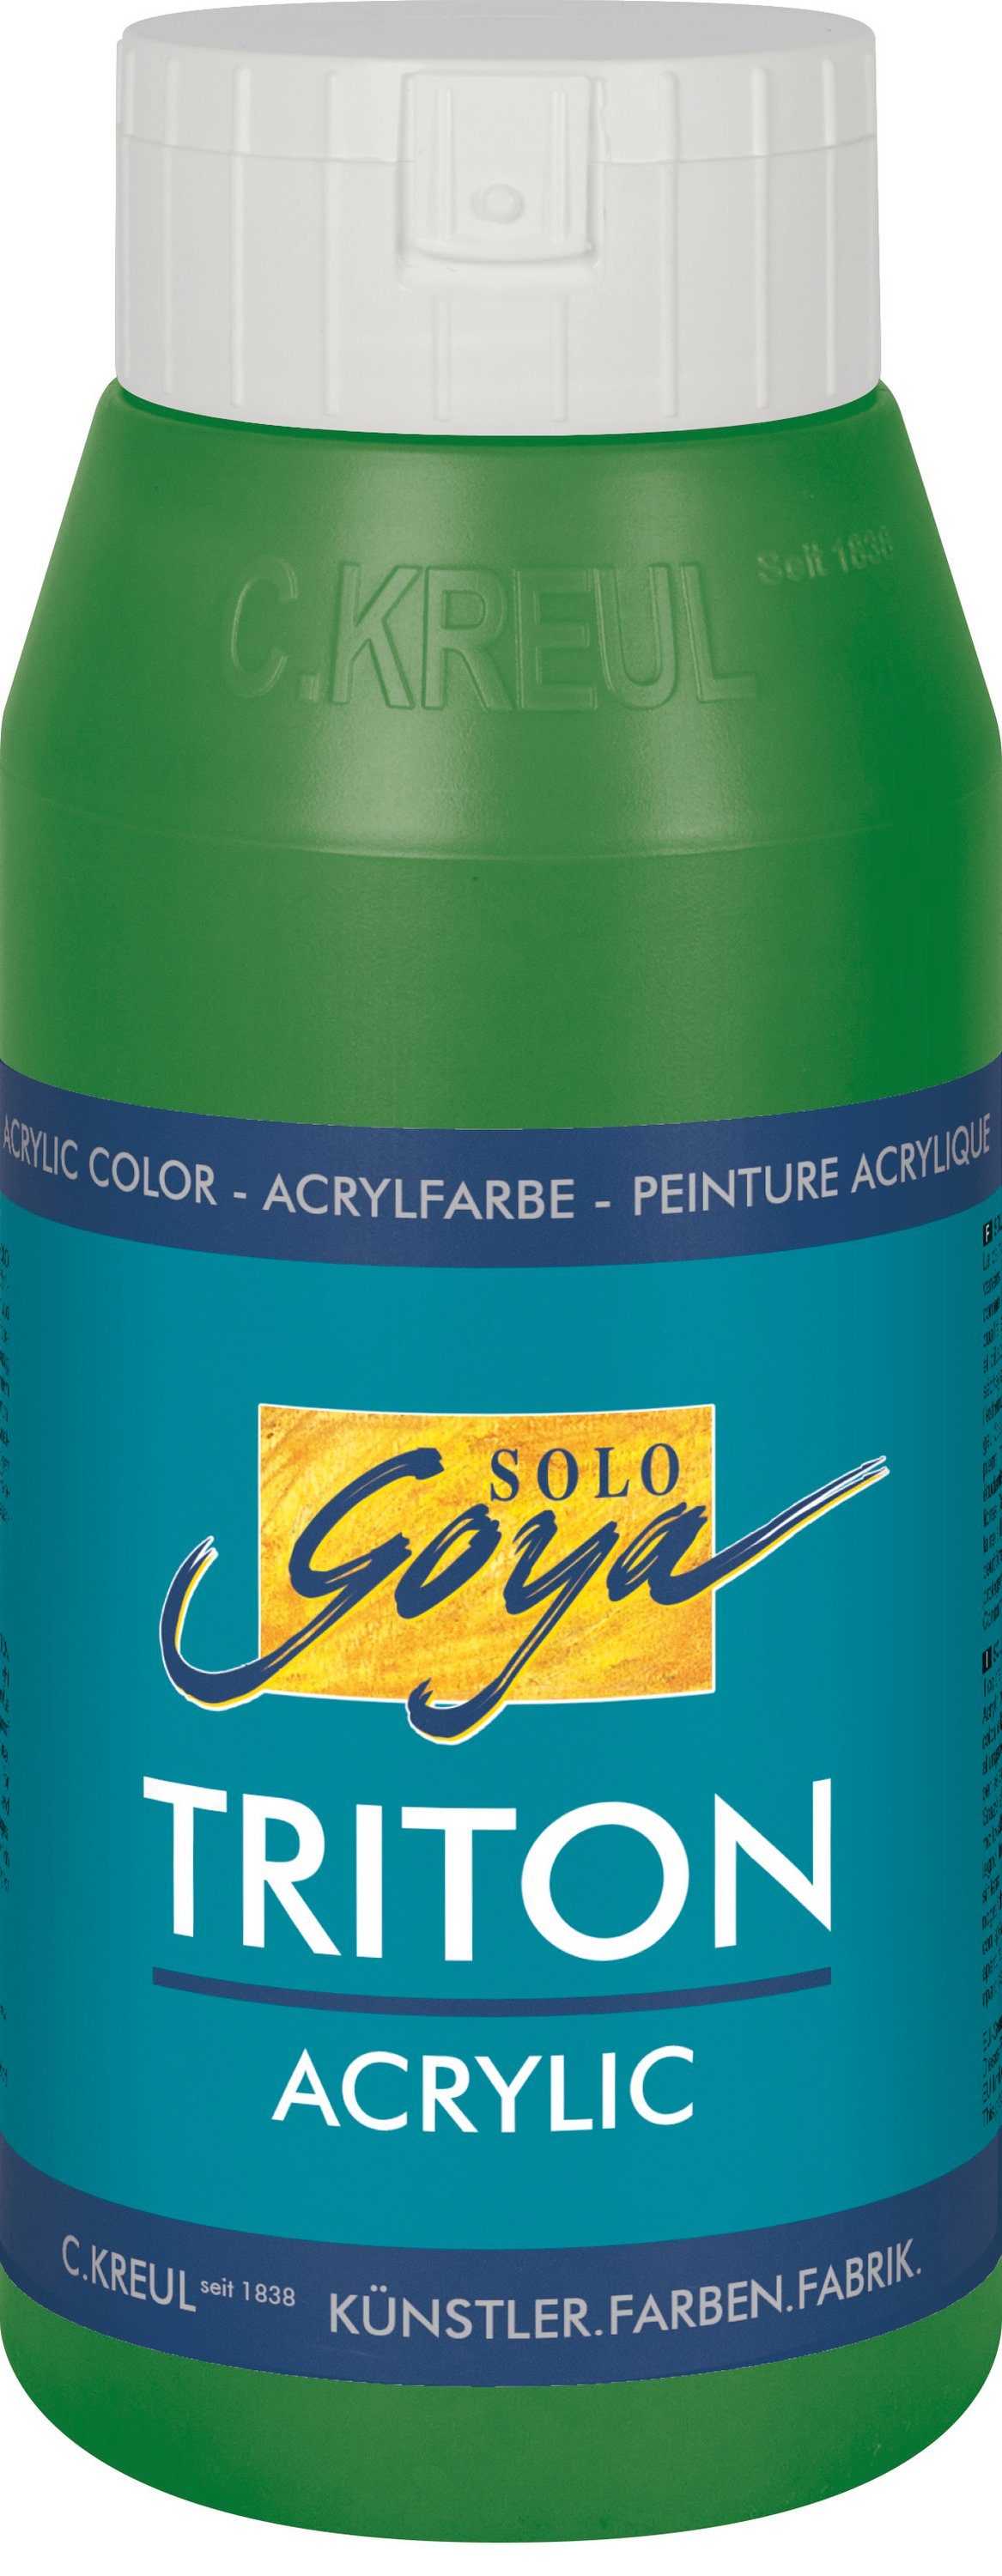 Kreul Acrylfarbe Solo Goya Triton Acrylic, 750 ml Laubgrün